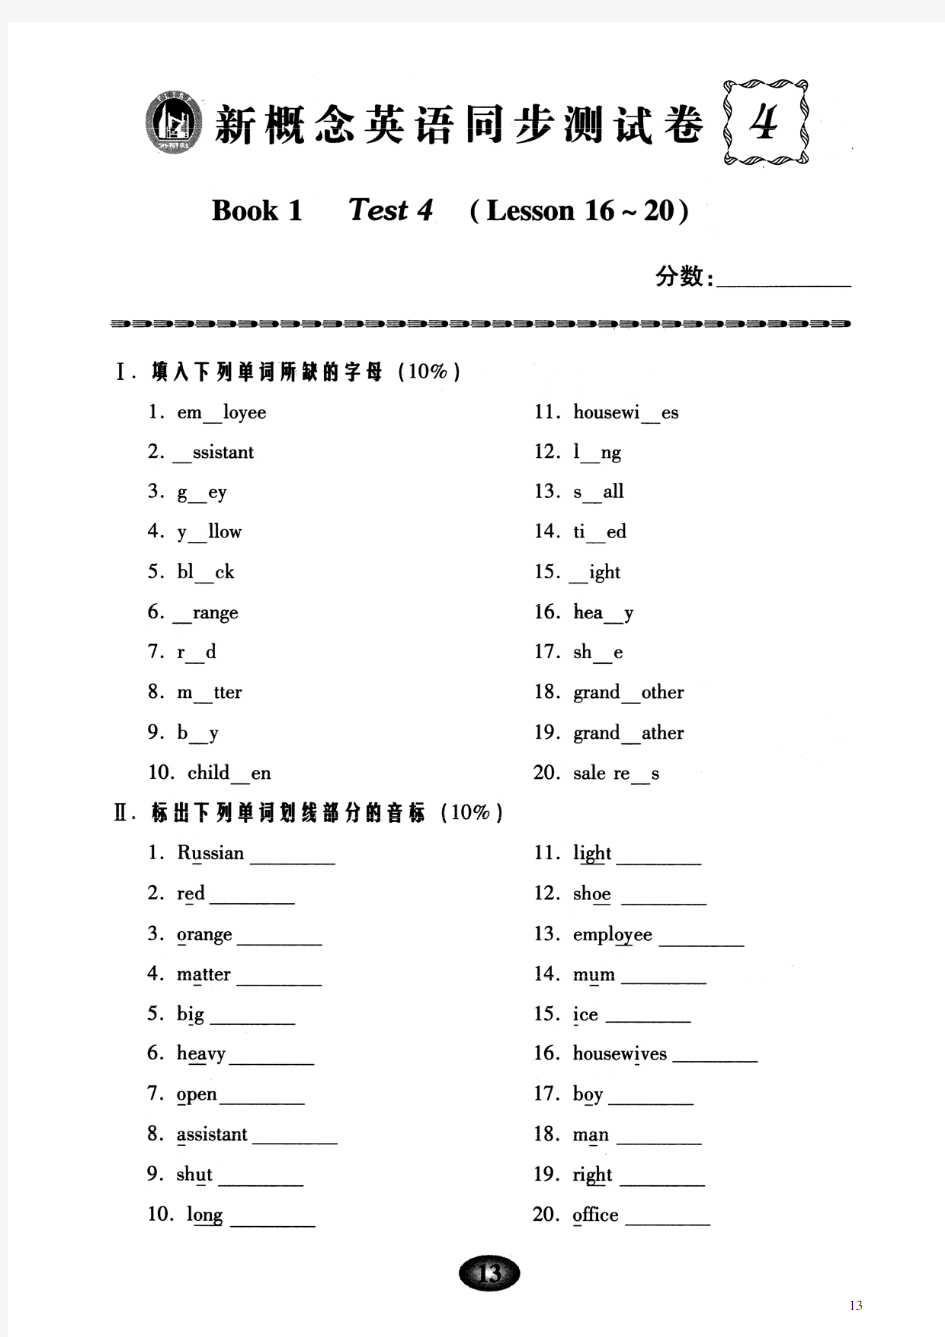 新概念英语同步测试卷 book1 test4